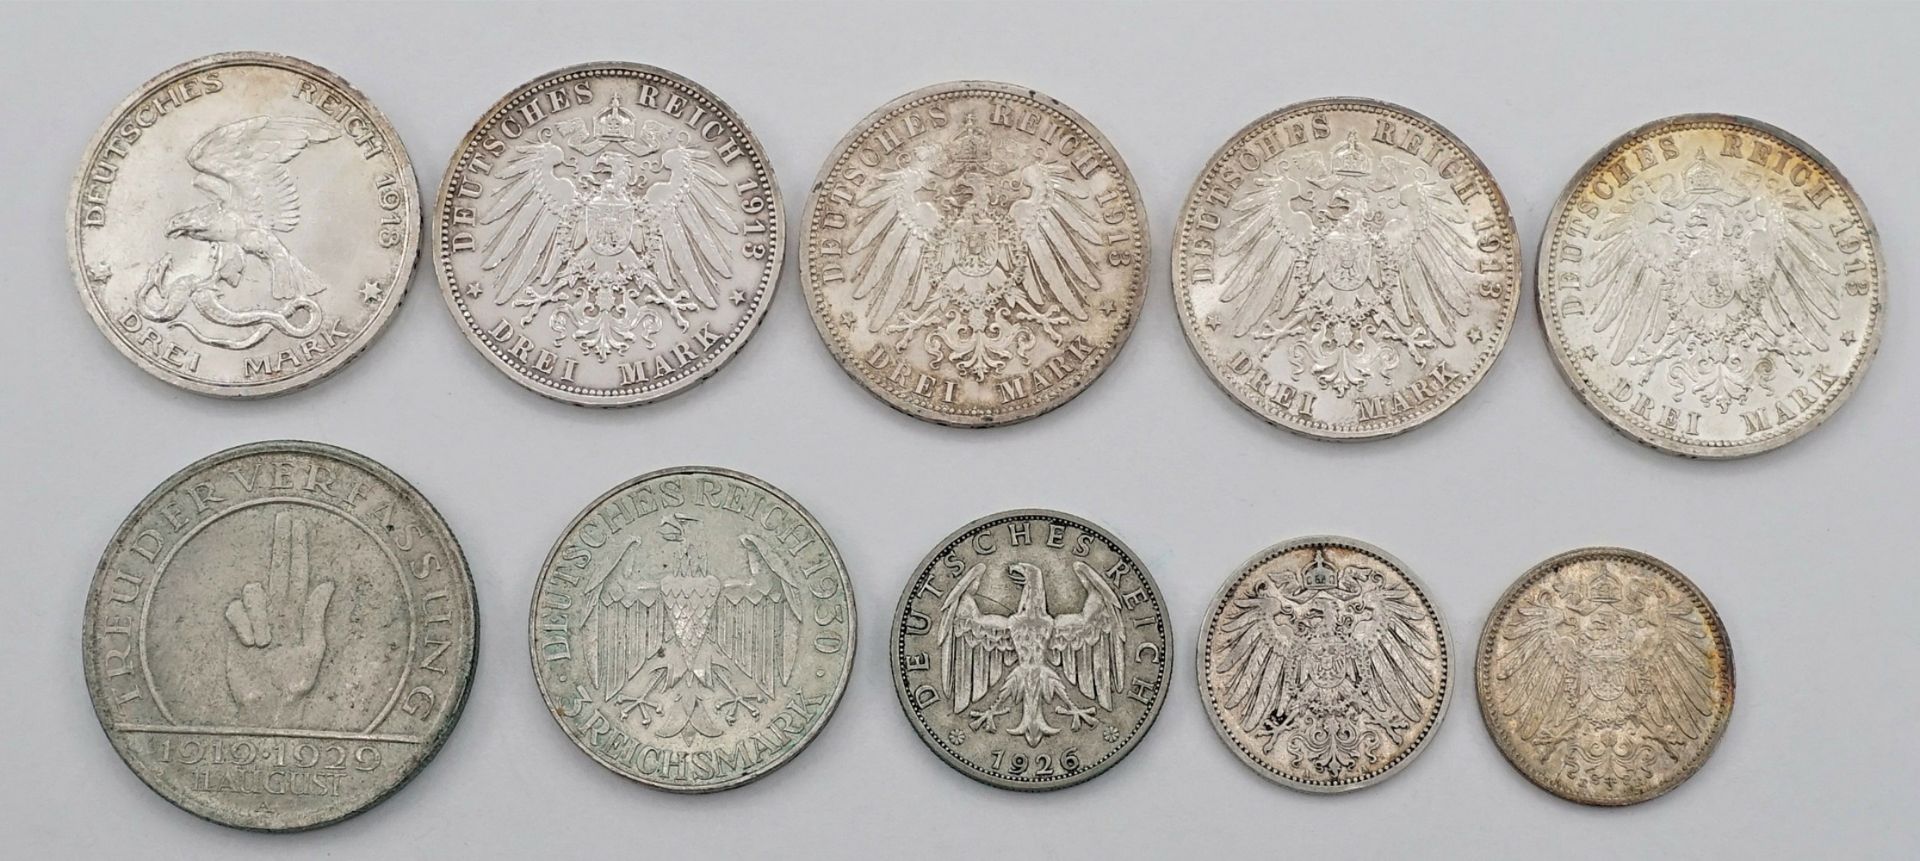 Ten coins Kaiserreich and Reichsmark - Image 2 of 2